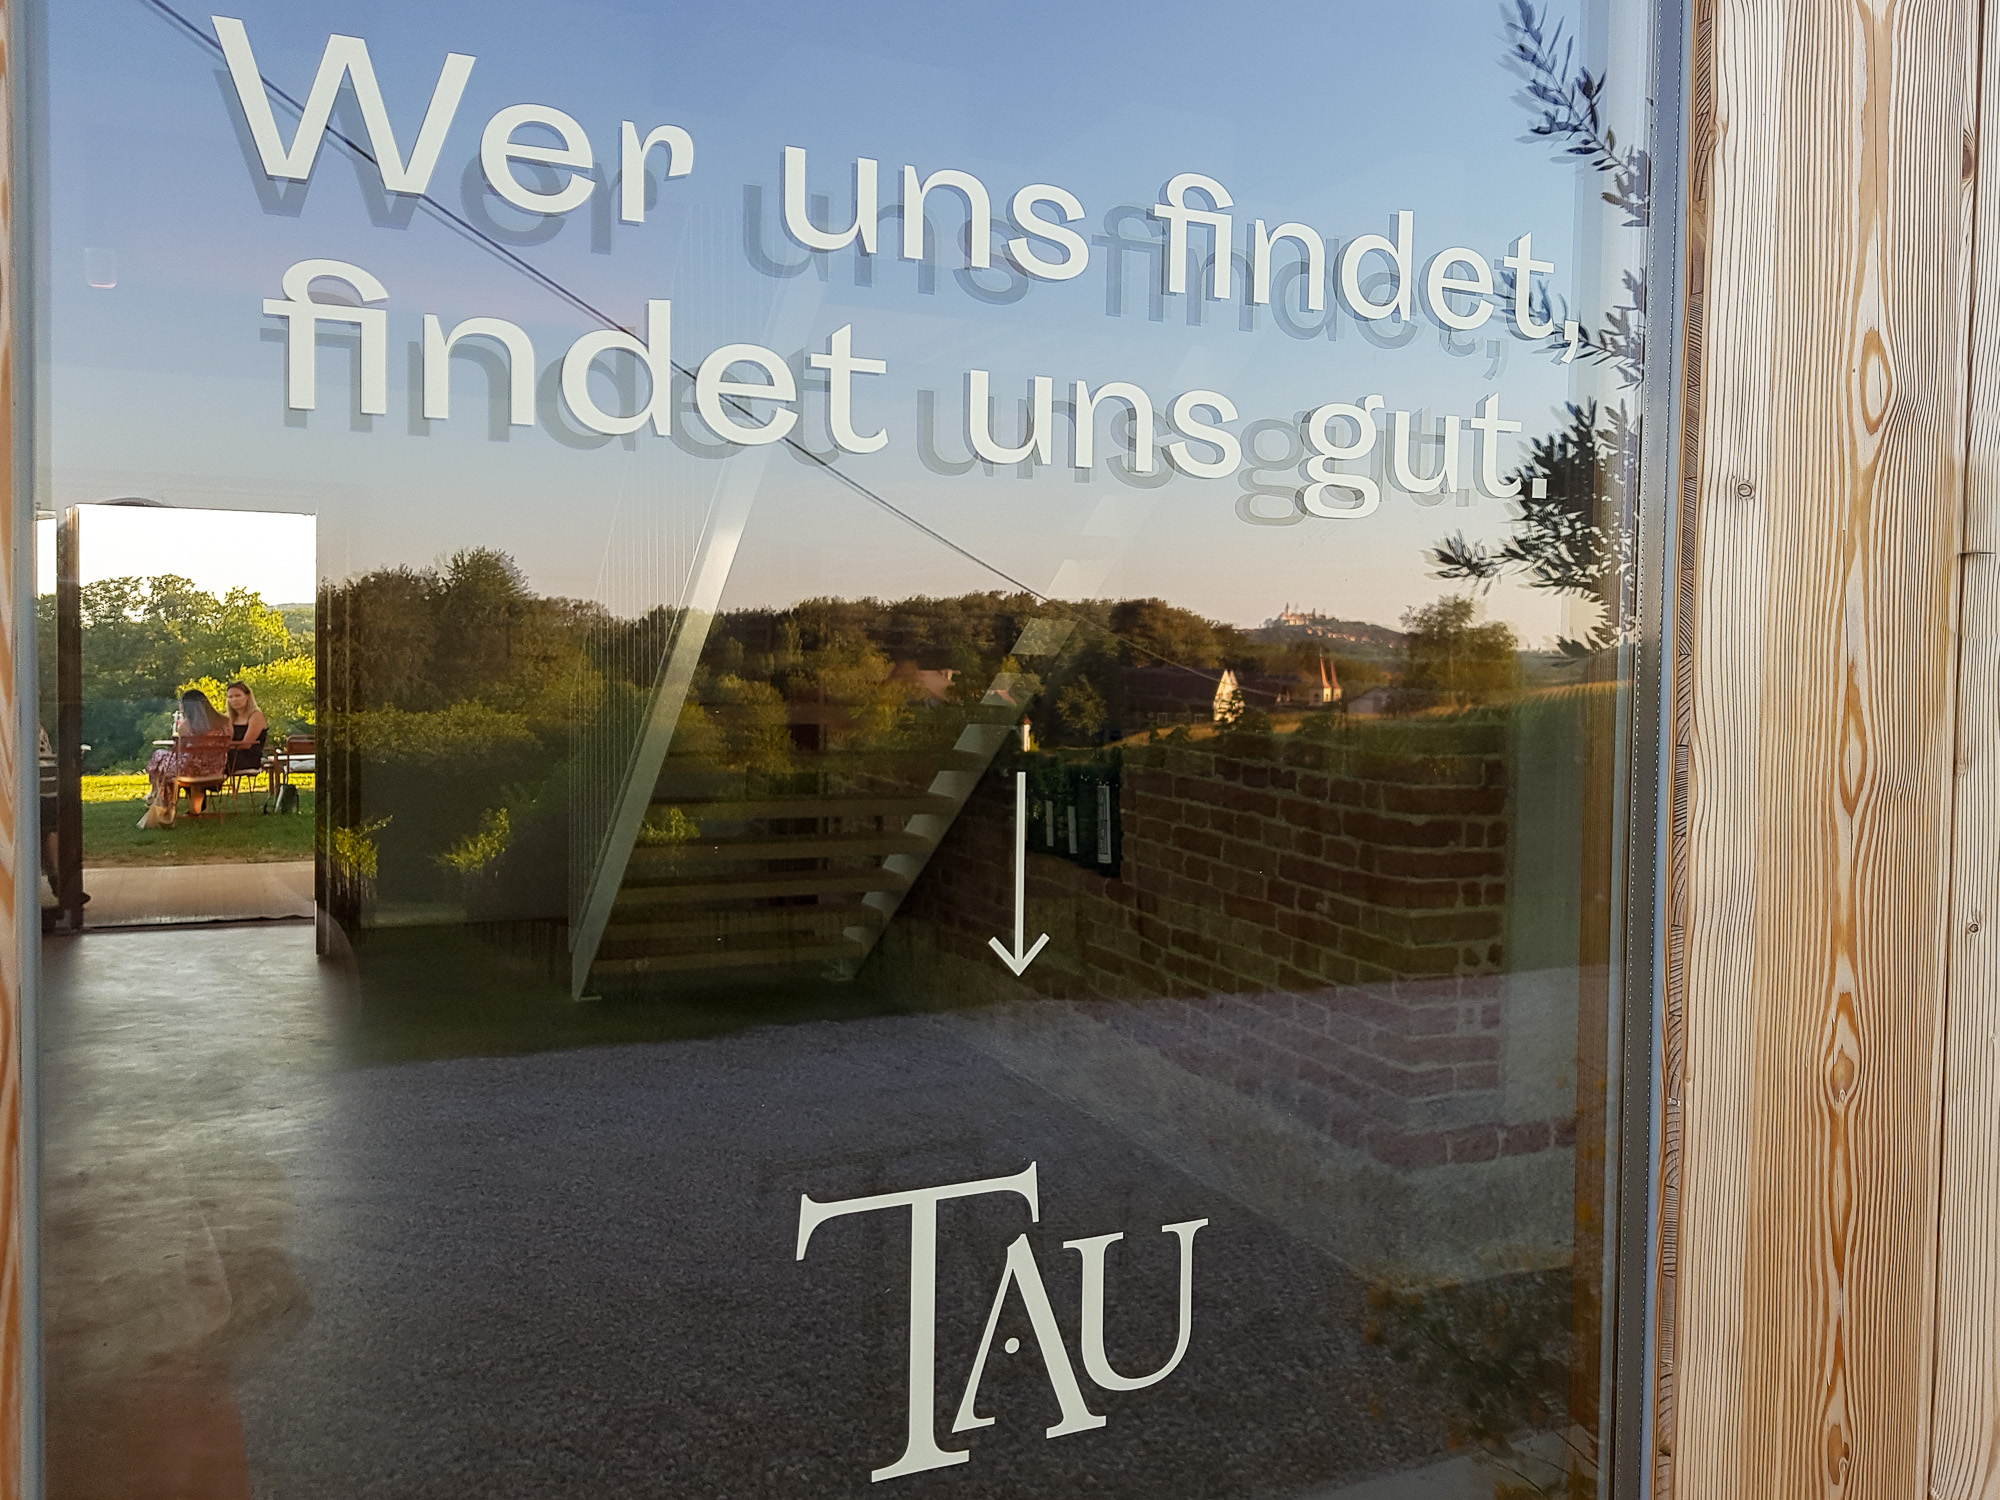 Motto der TAU-Vereinigung "Wer uns findet, findet uns gut" auf Fensterscheibe